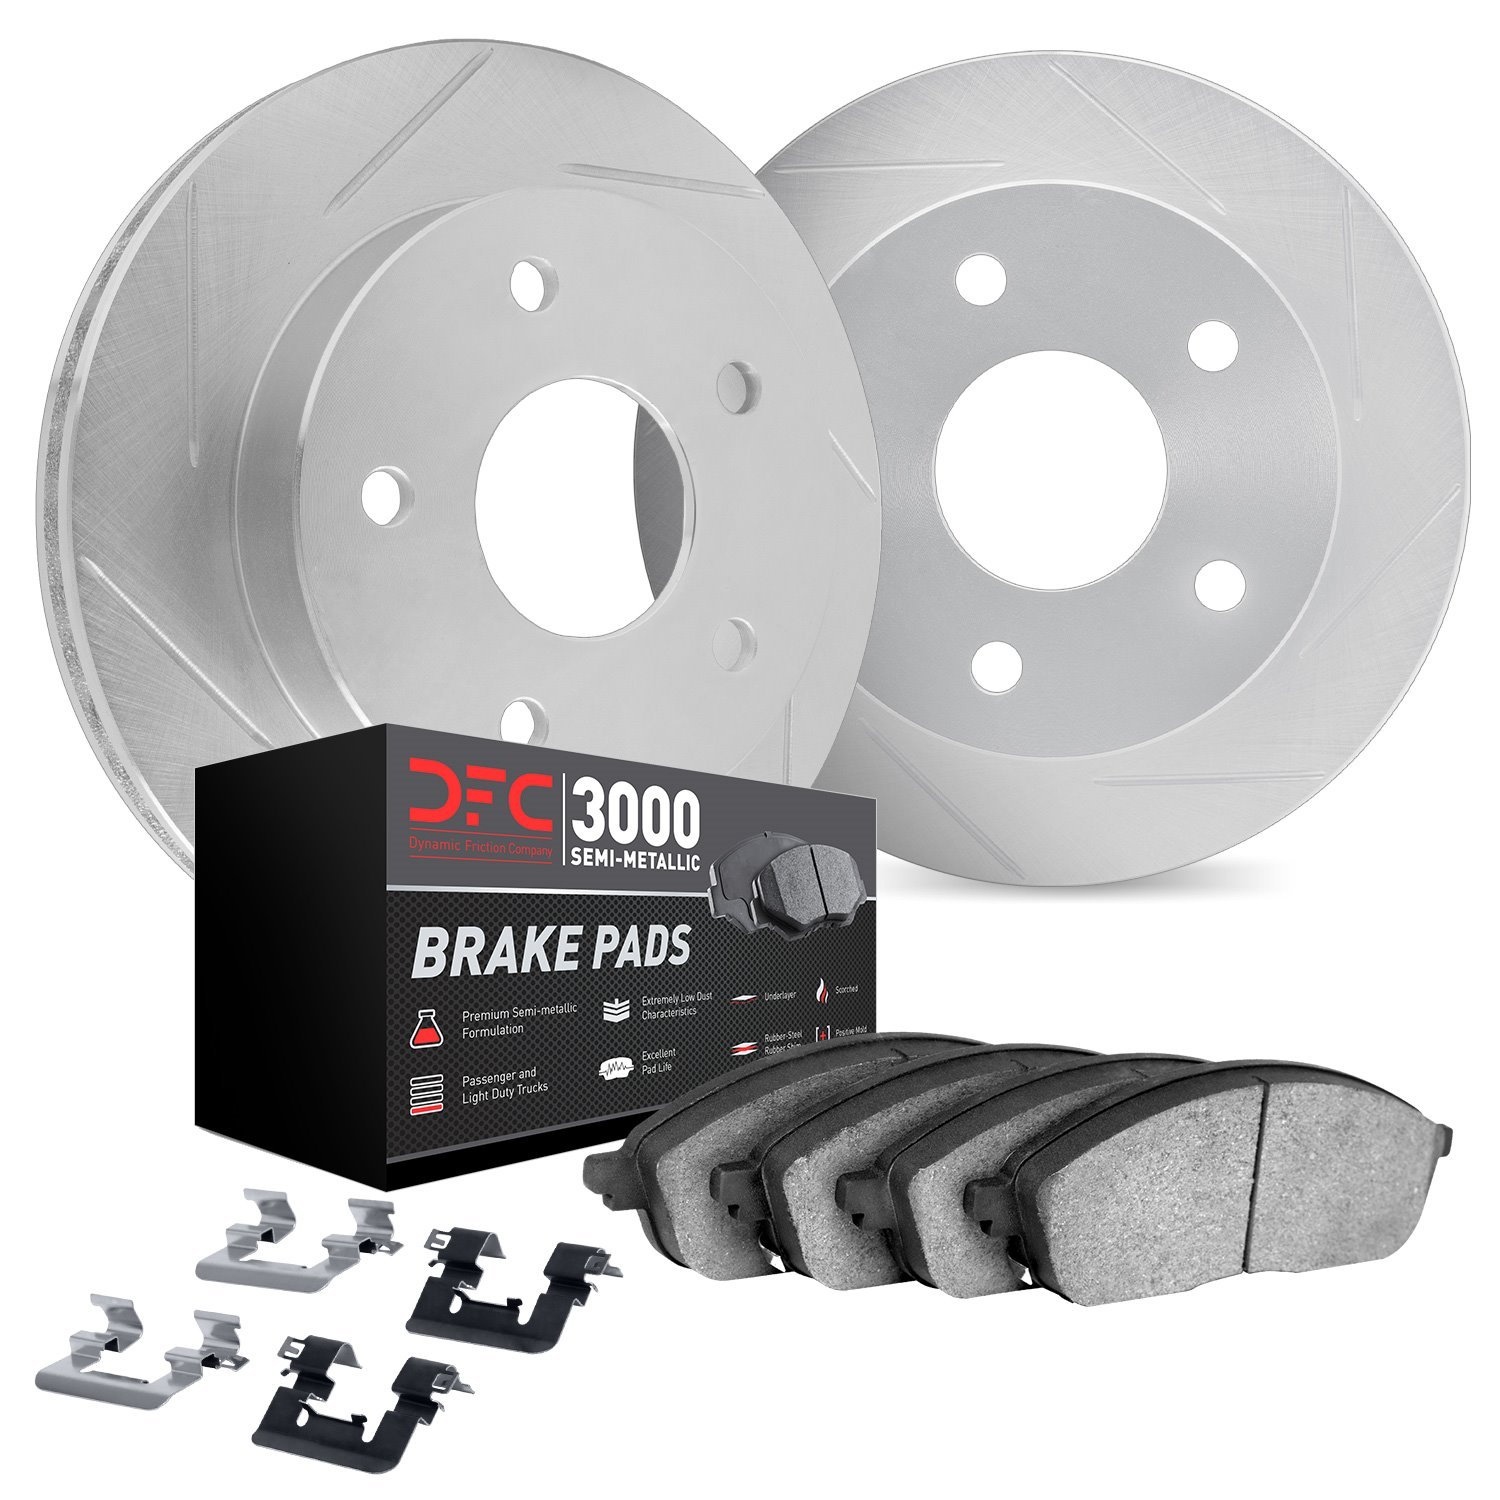 5112-76138 Slotted Brake Rotors with 3000-Series Semi-Metallic Brake Pads Kit & Hardware [Silver], 2005-2015 Lexus/Toyota/Scion,